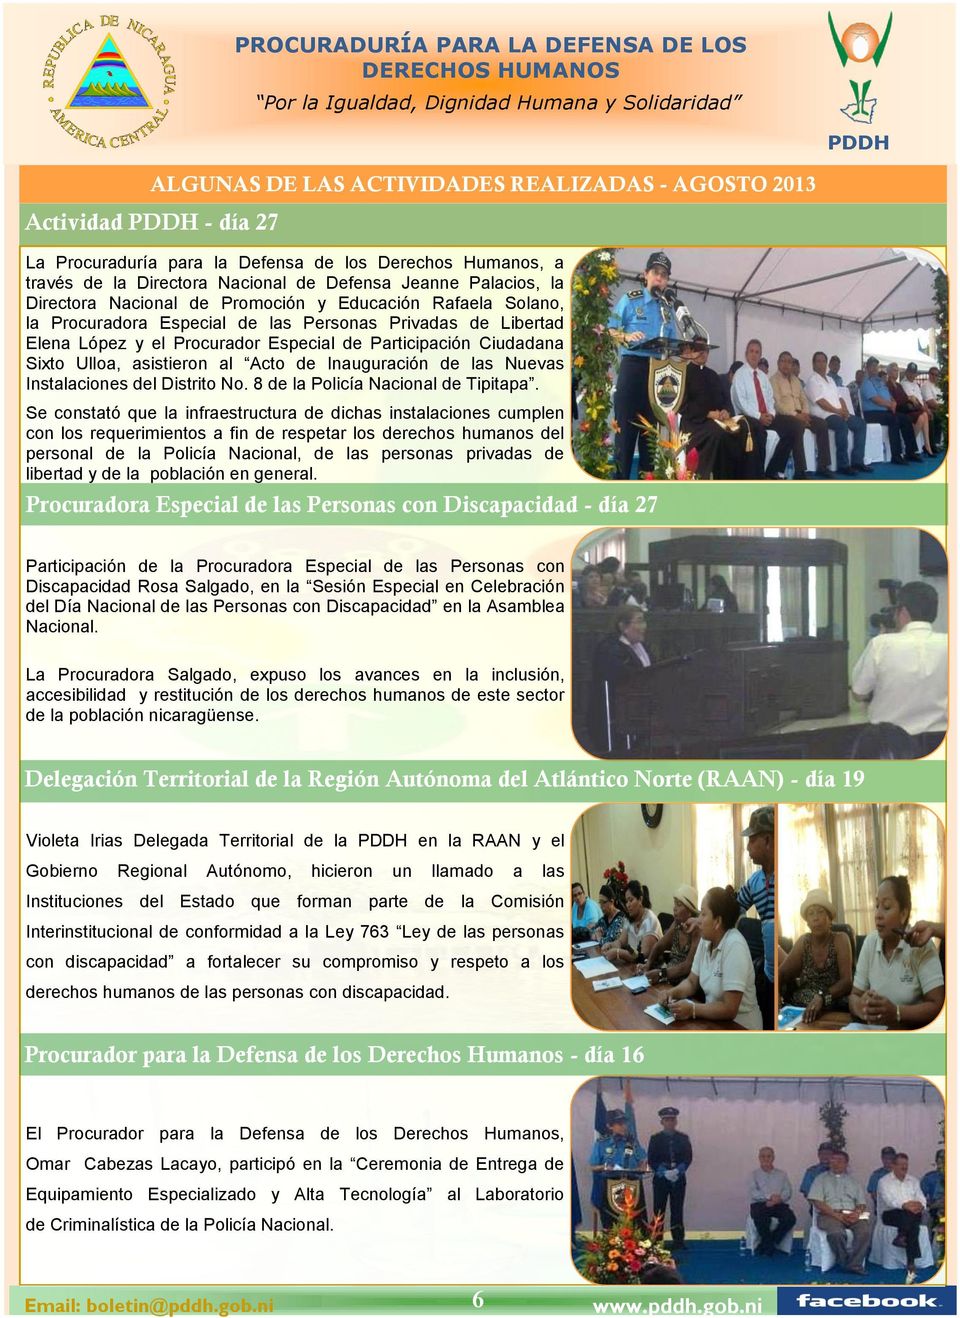 al Acto de Inauguración de las Nuevas Instalaciones del Distrito No. 8 de la Policía Nacional de Tipitapa.